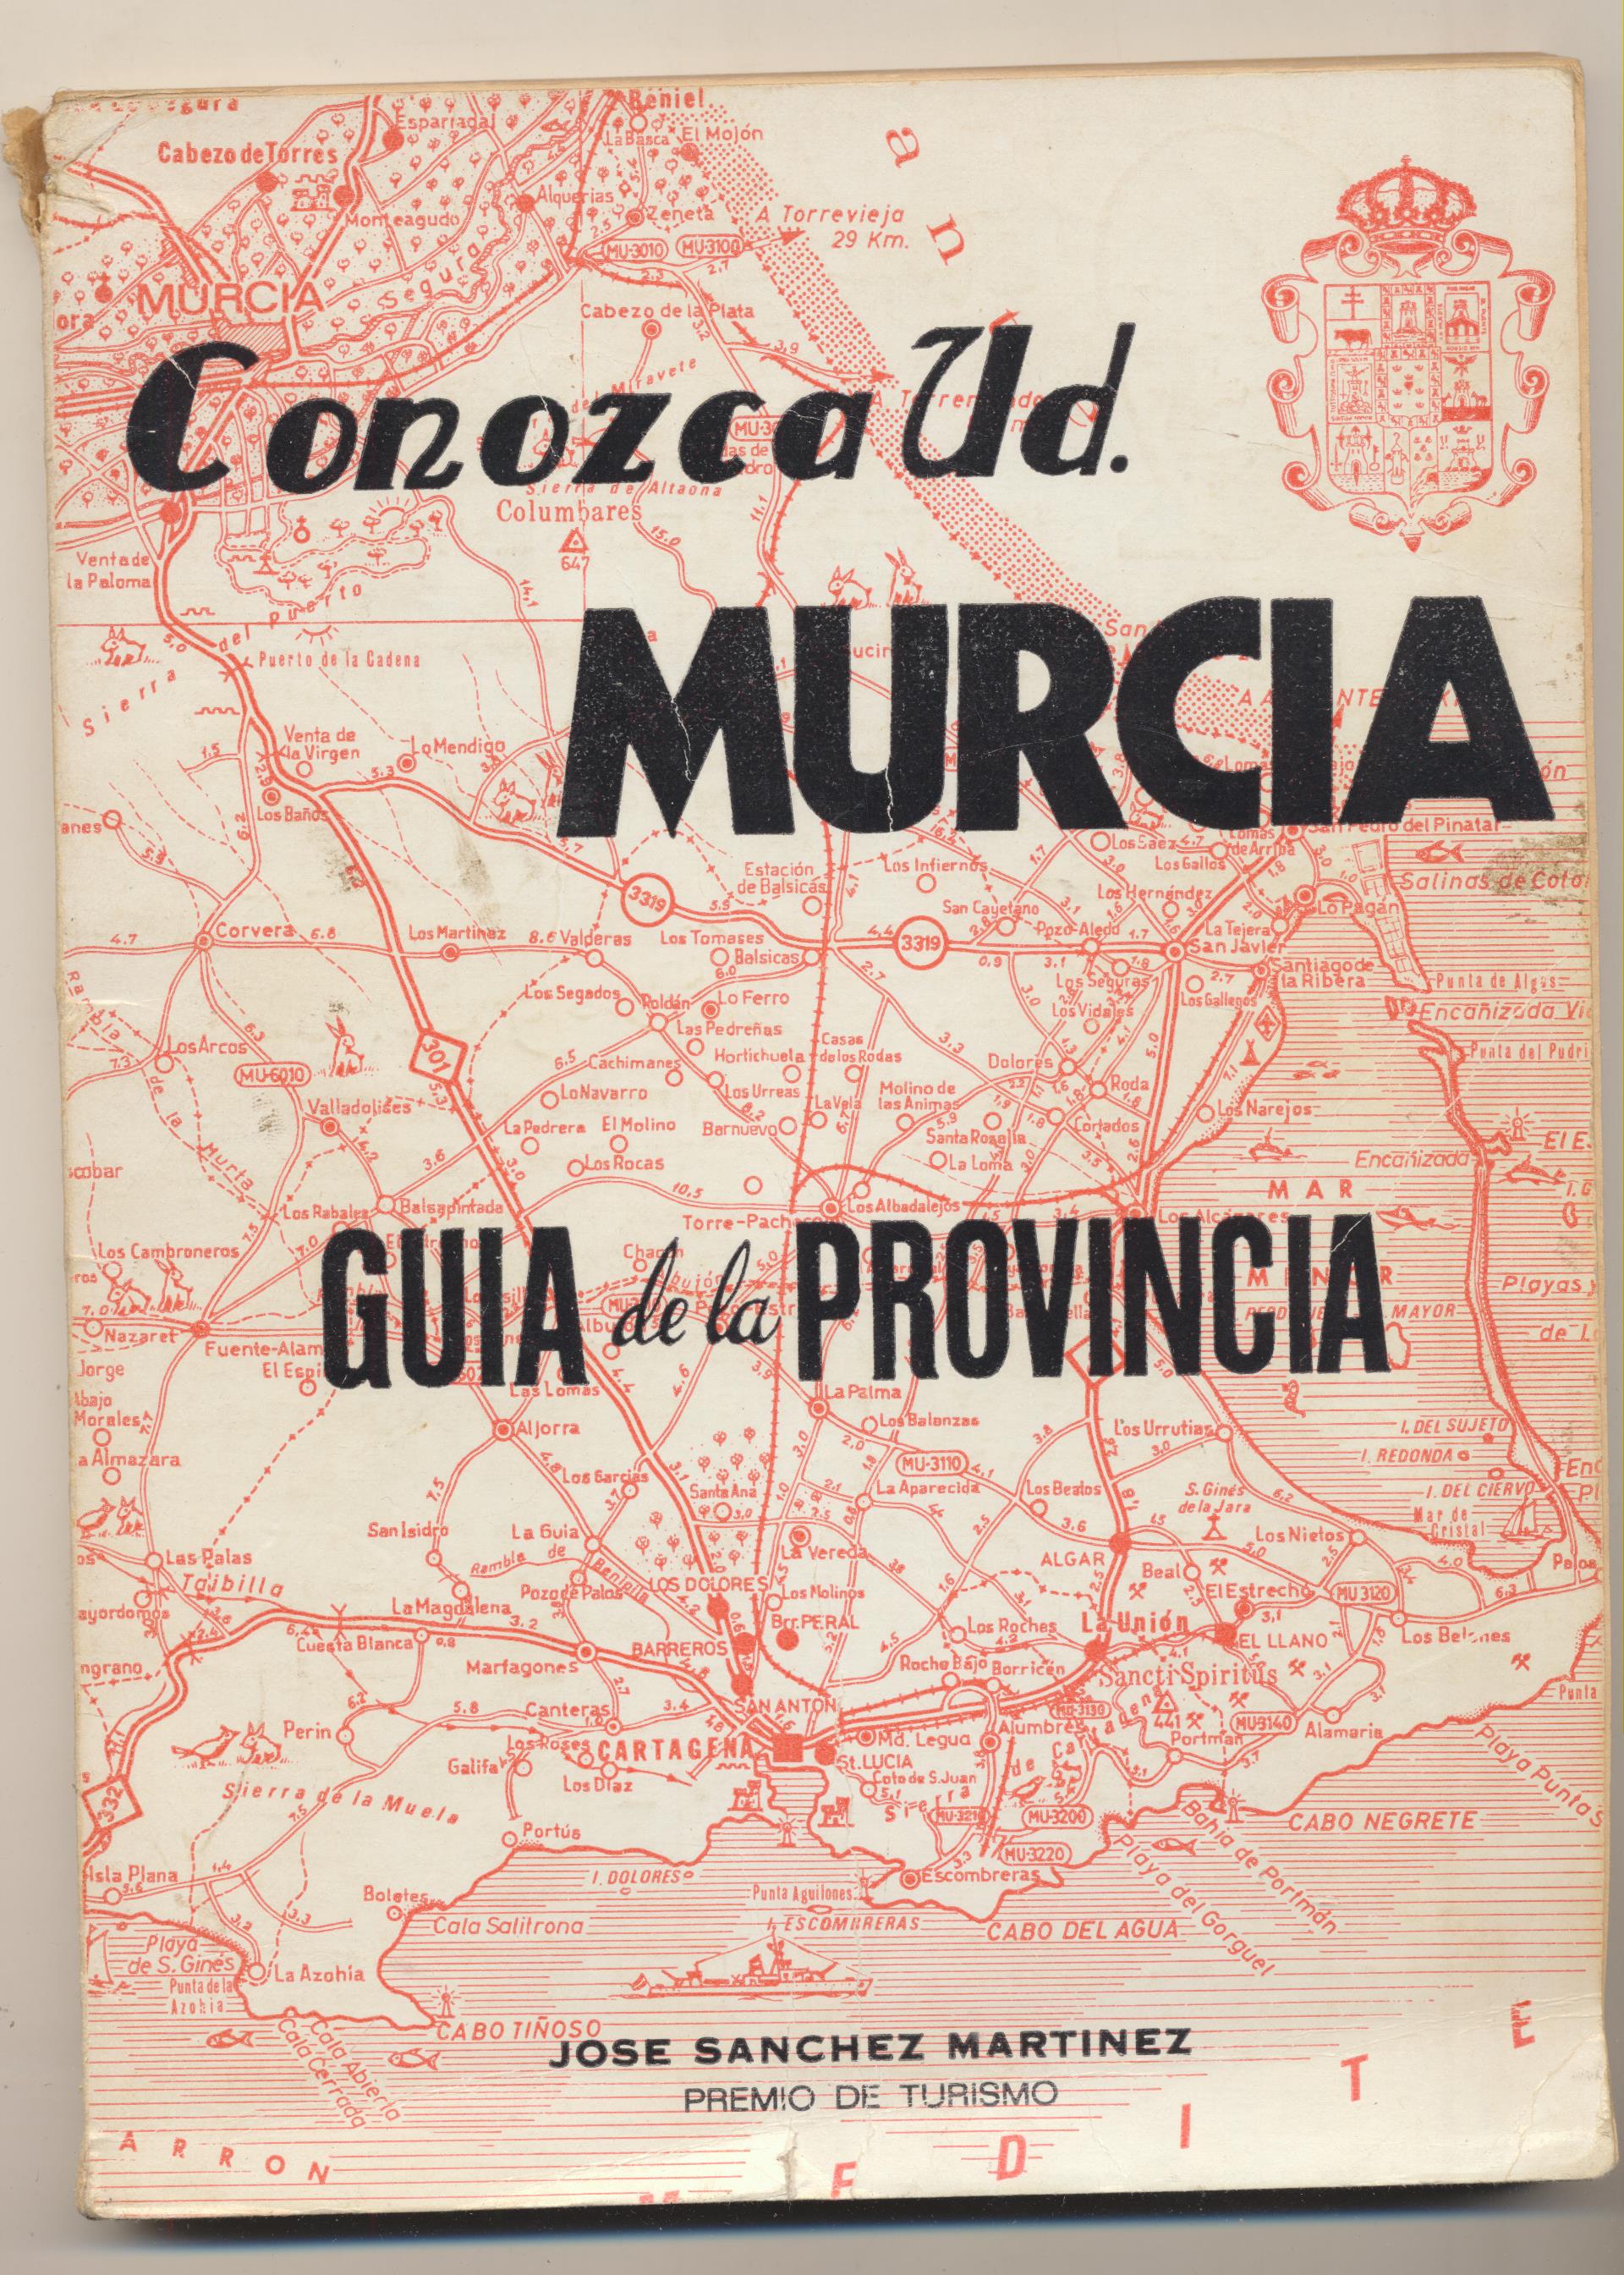 Conozca Ud. Murcia. Guía de la Provincia por José Sánchez Martínez. Murcia 1975